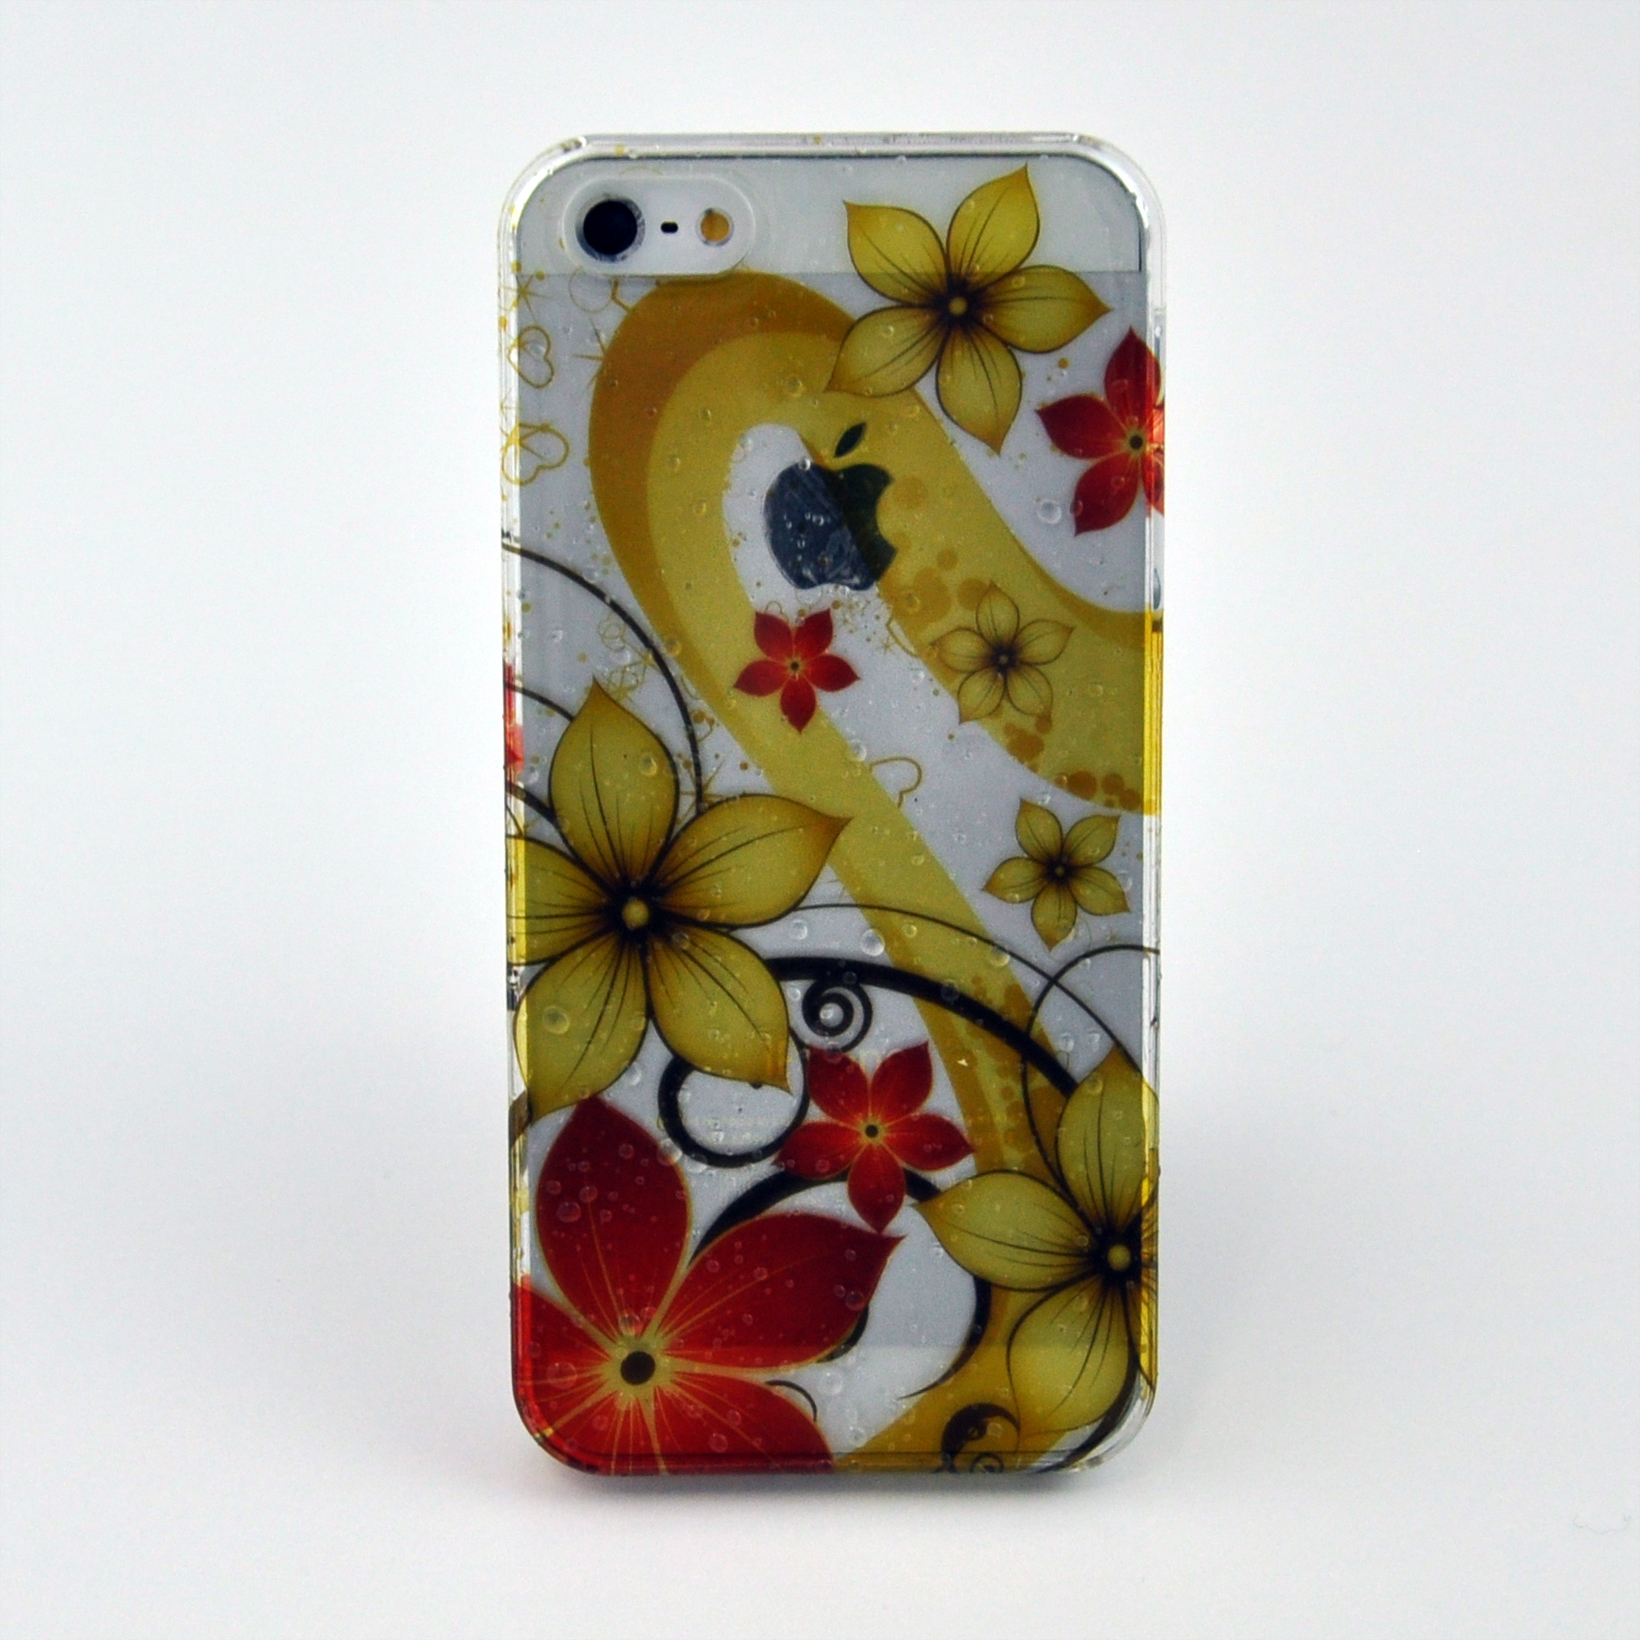 おしゃれなiPhone 5/5s カバー デザインクリア水滴ケース　017